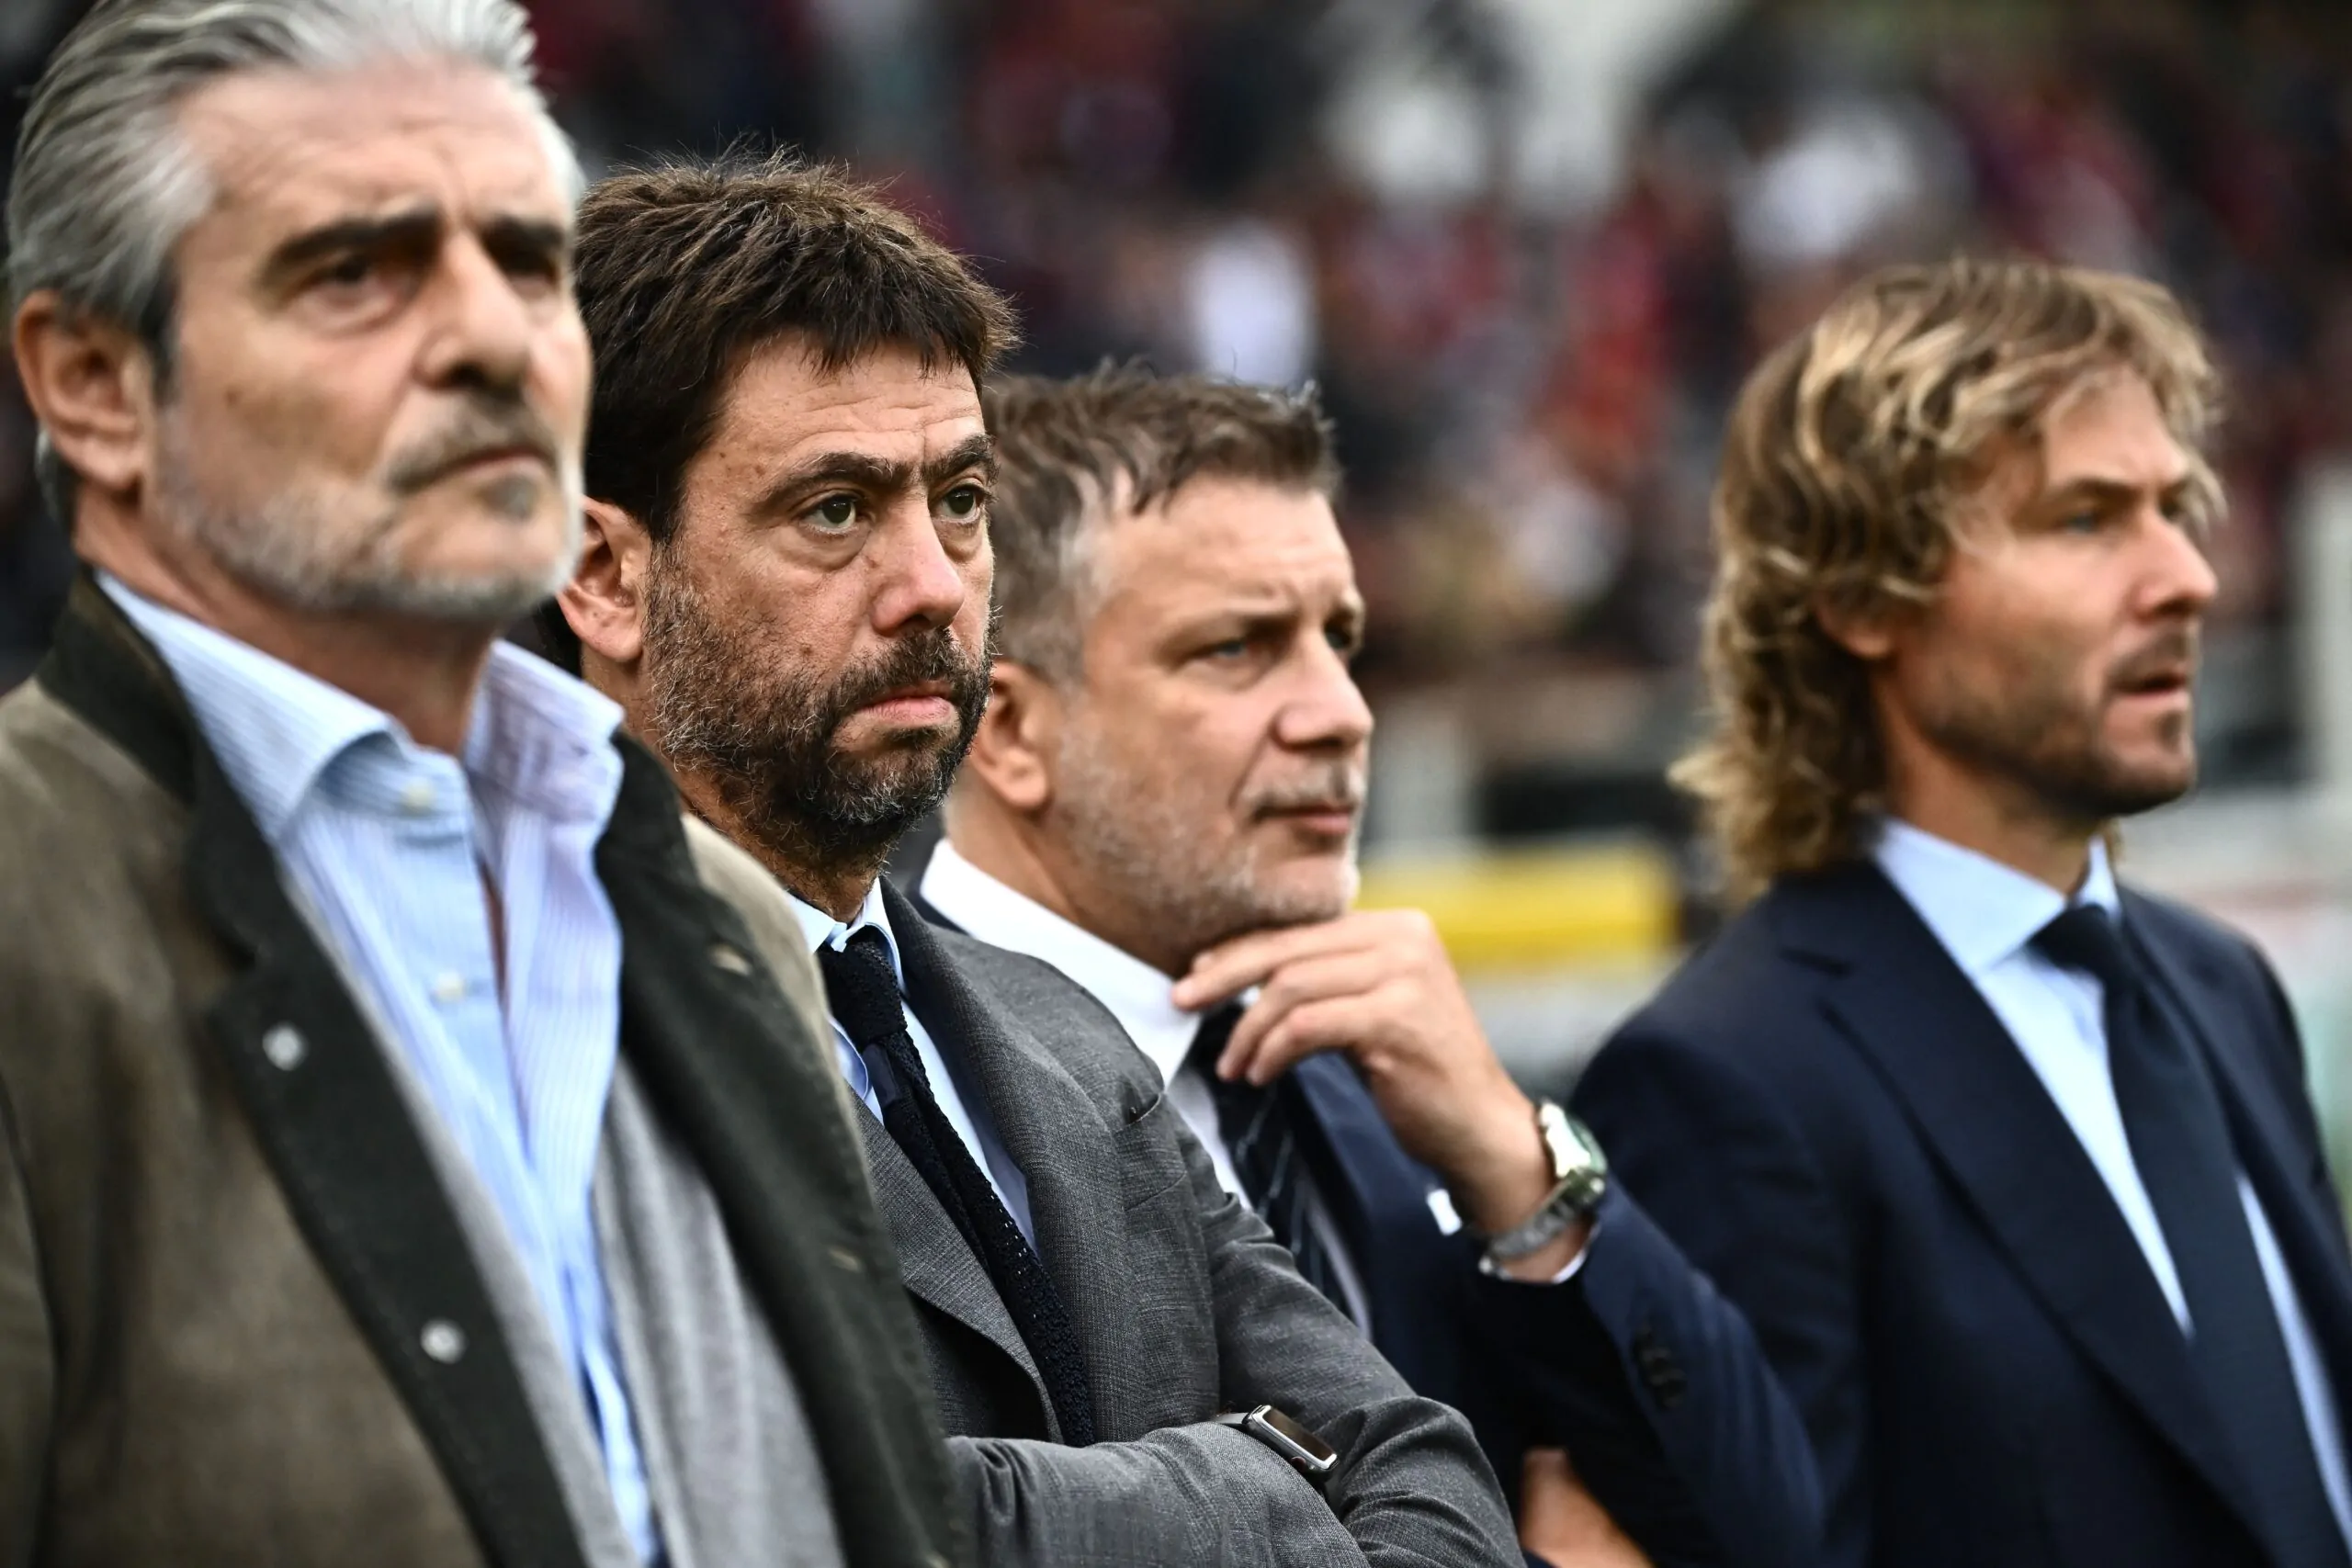 Caso plusvalenze, arriva il comunicato ufficiale della Juventus